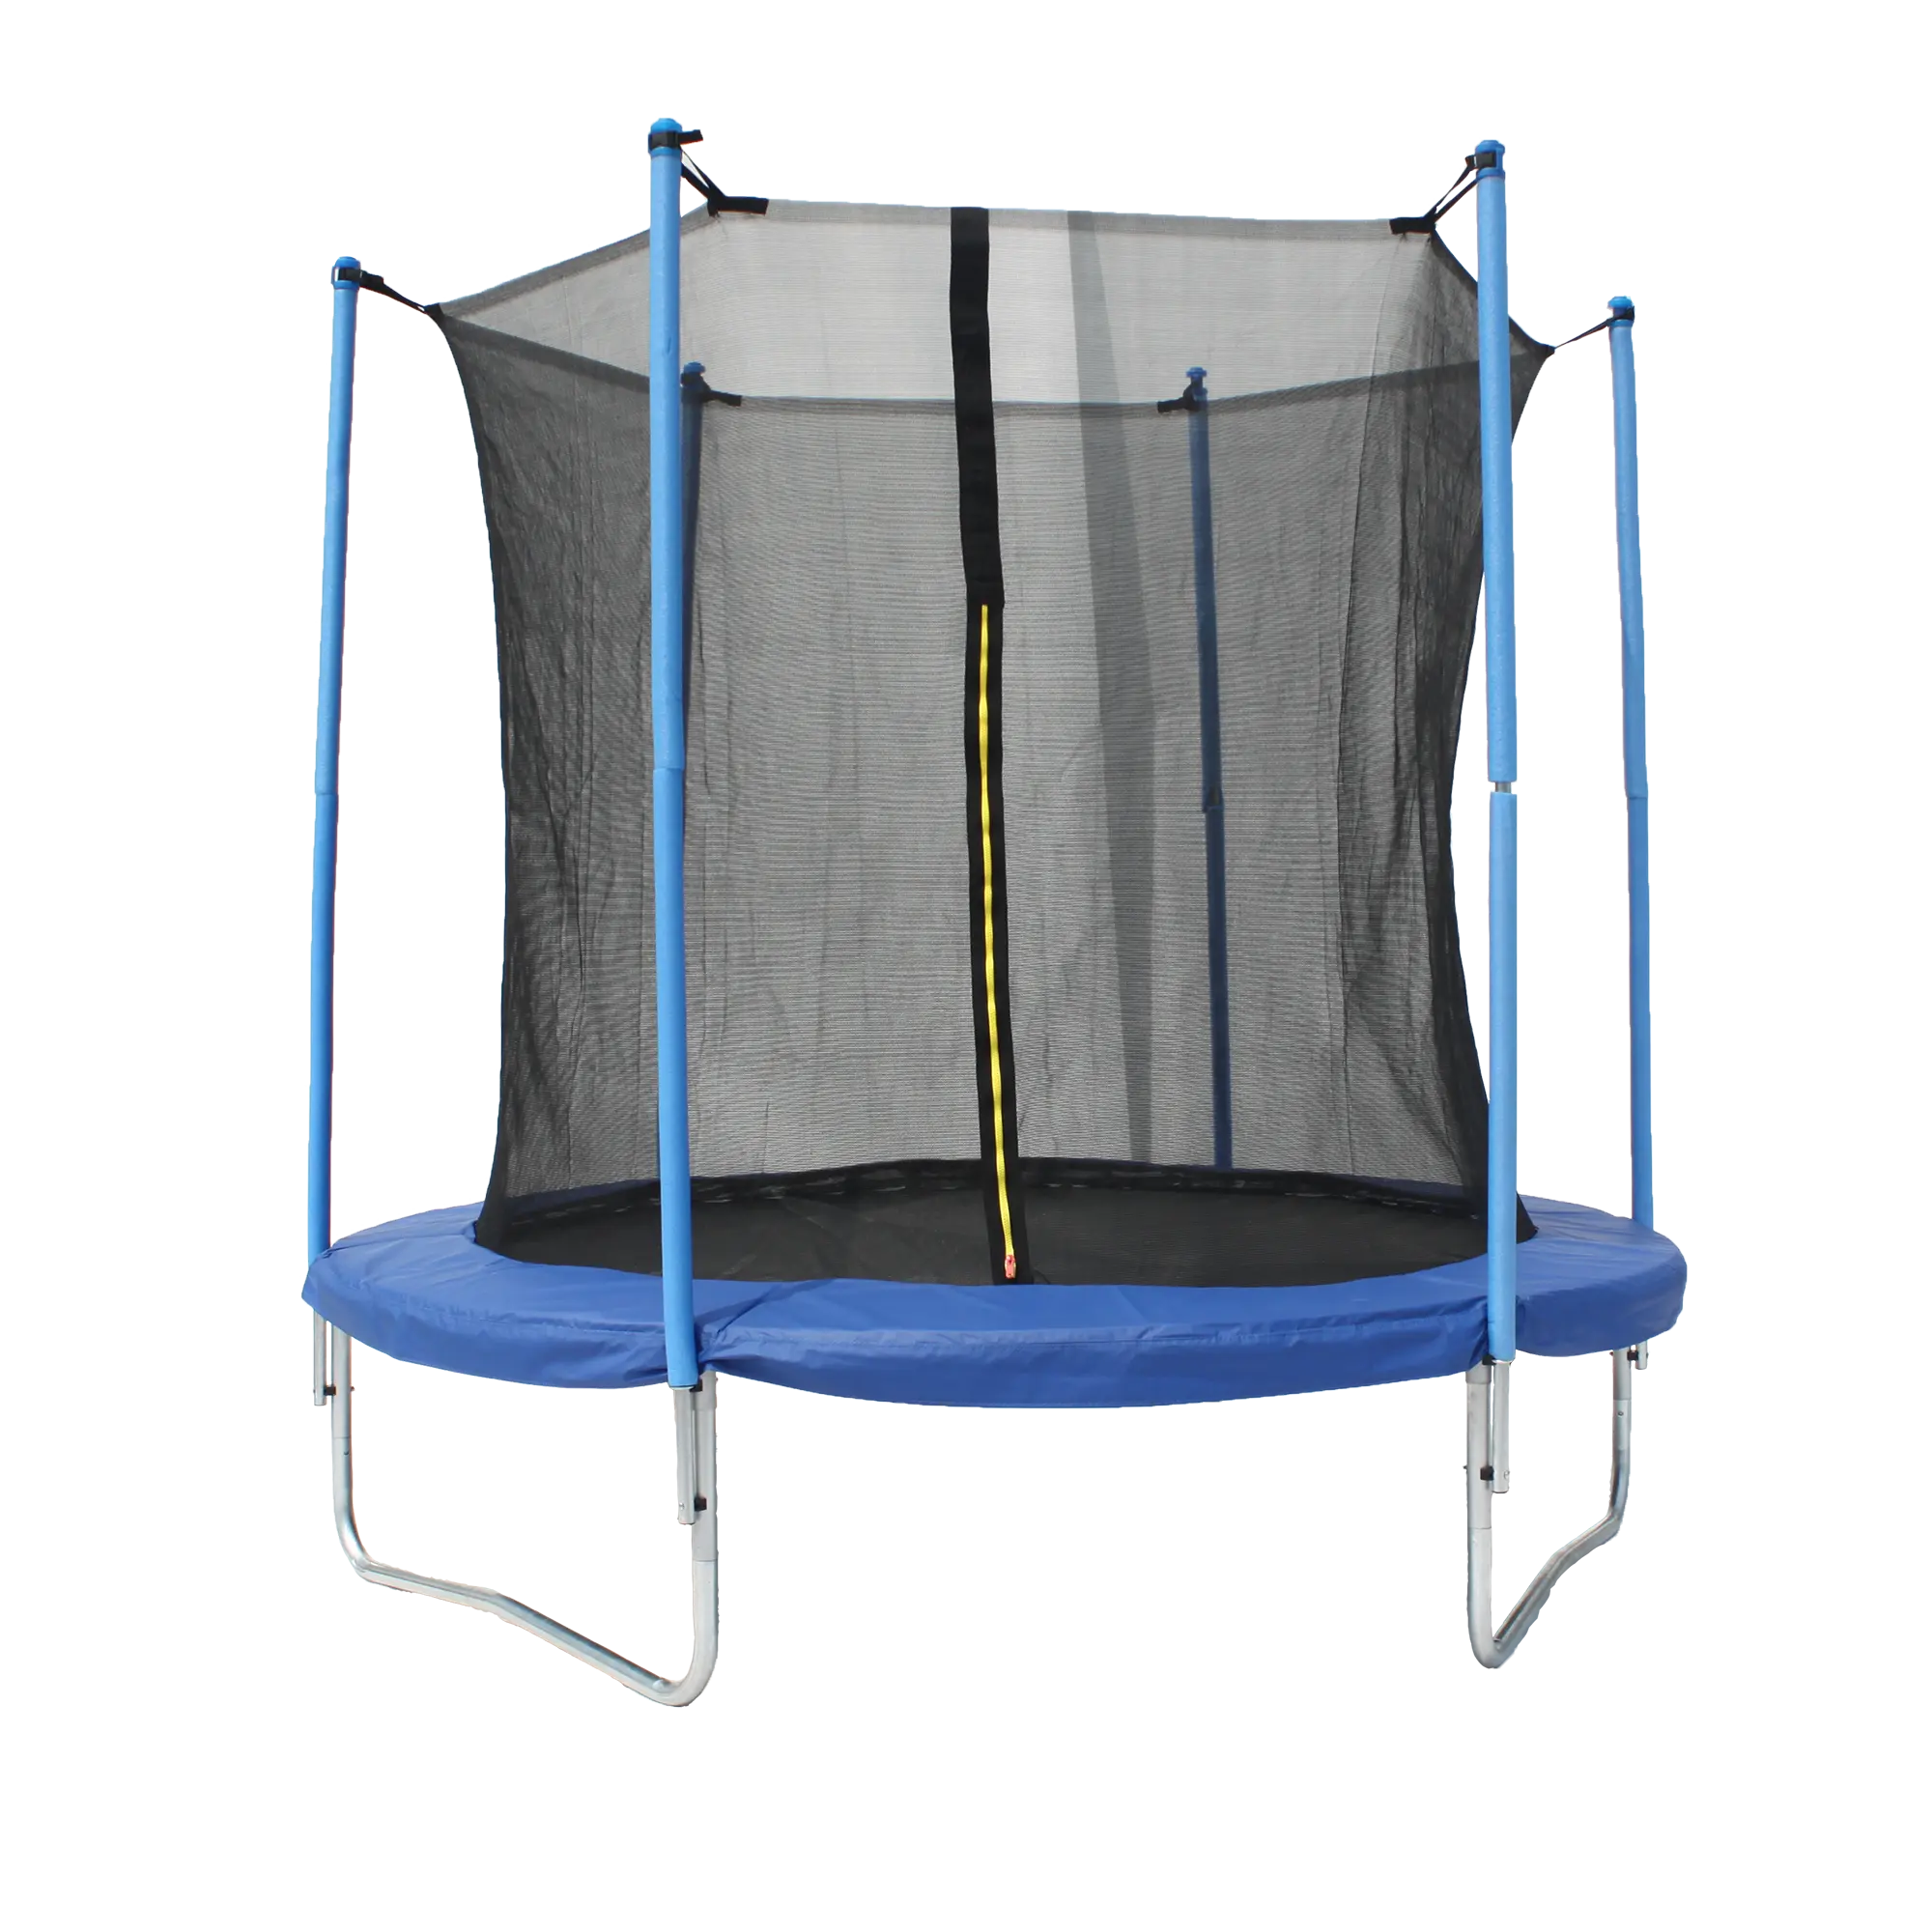 Baoxiang 8ft trampoline met beveiliging netto en verlichting indoor springen trampoline